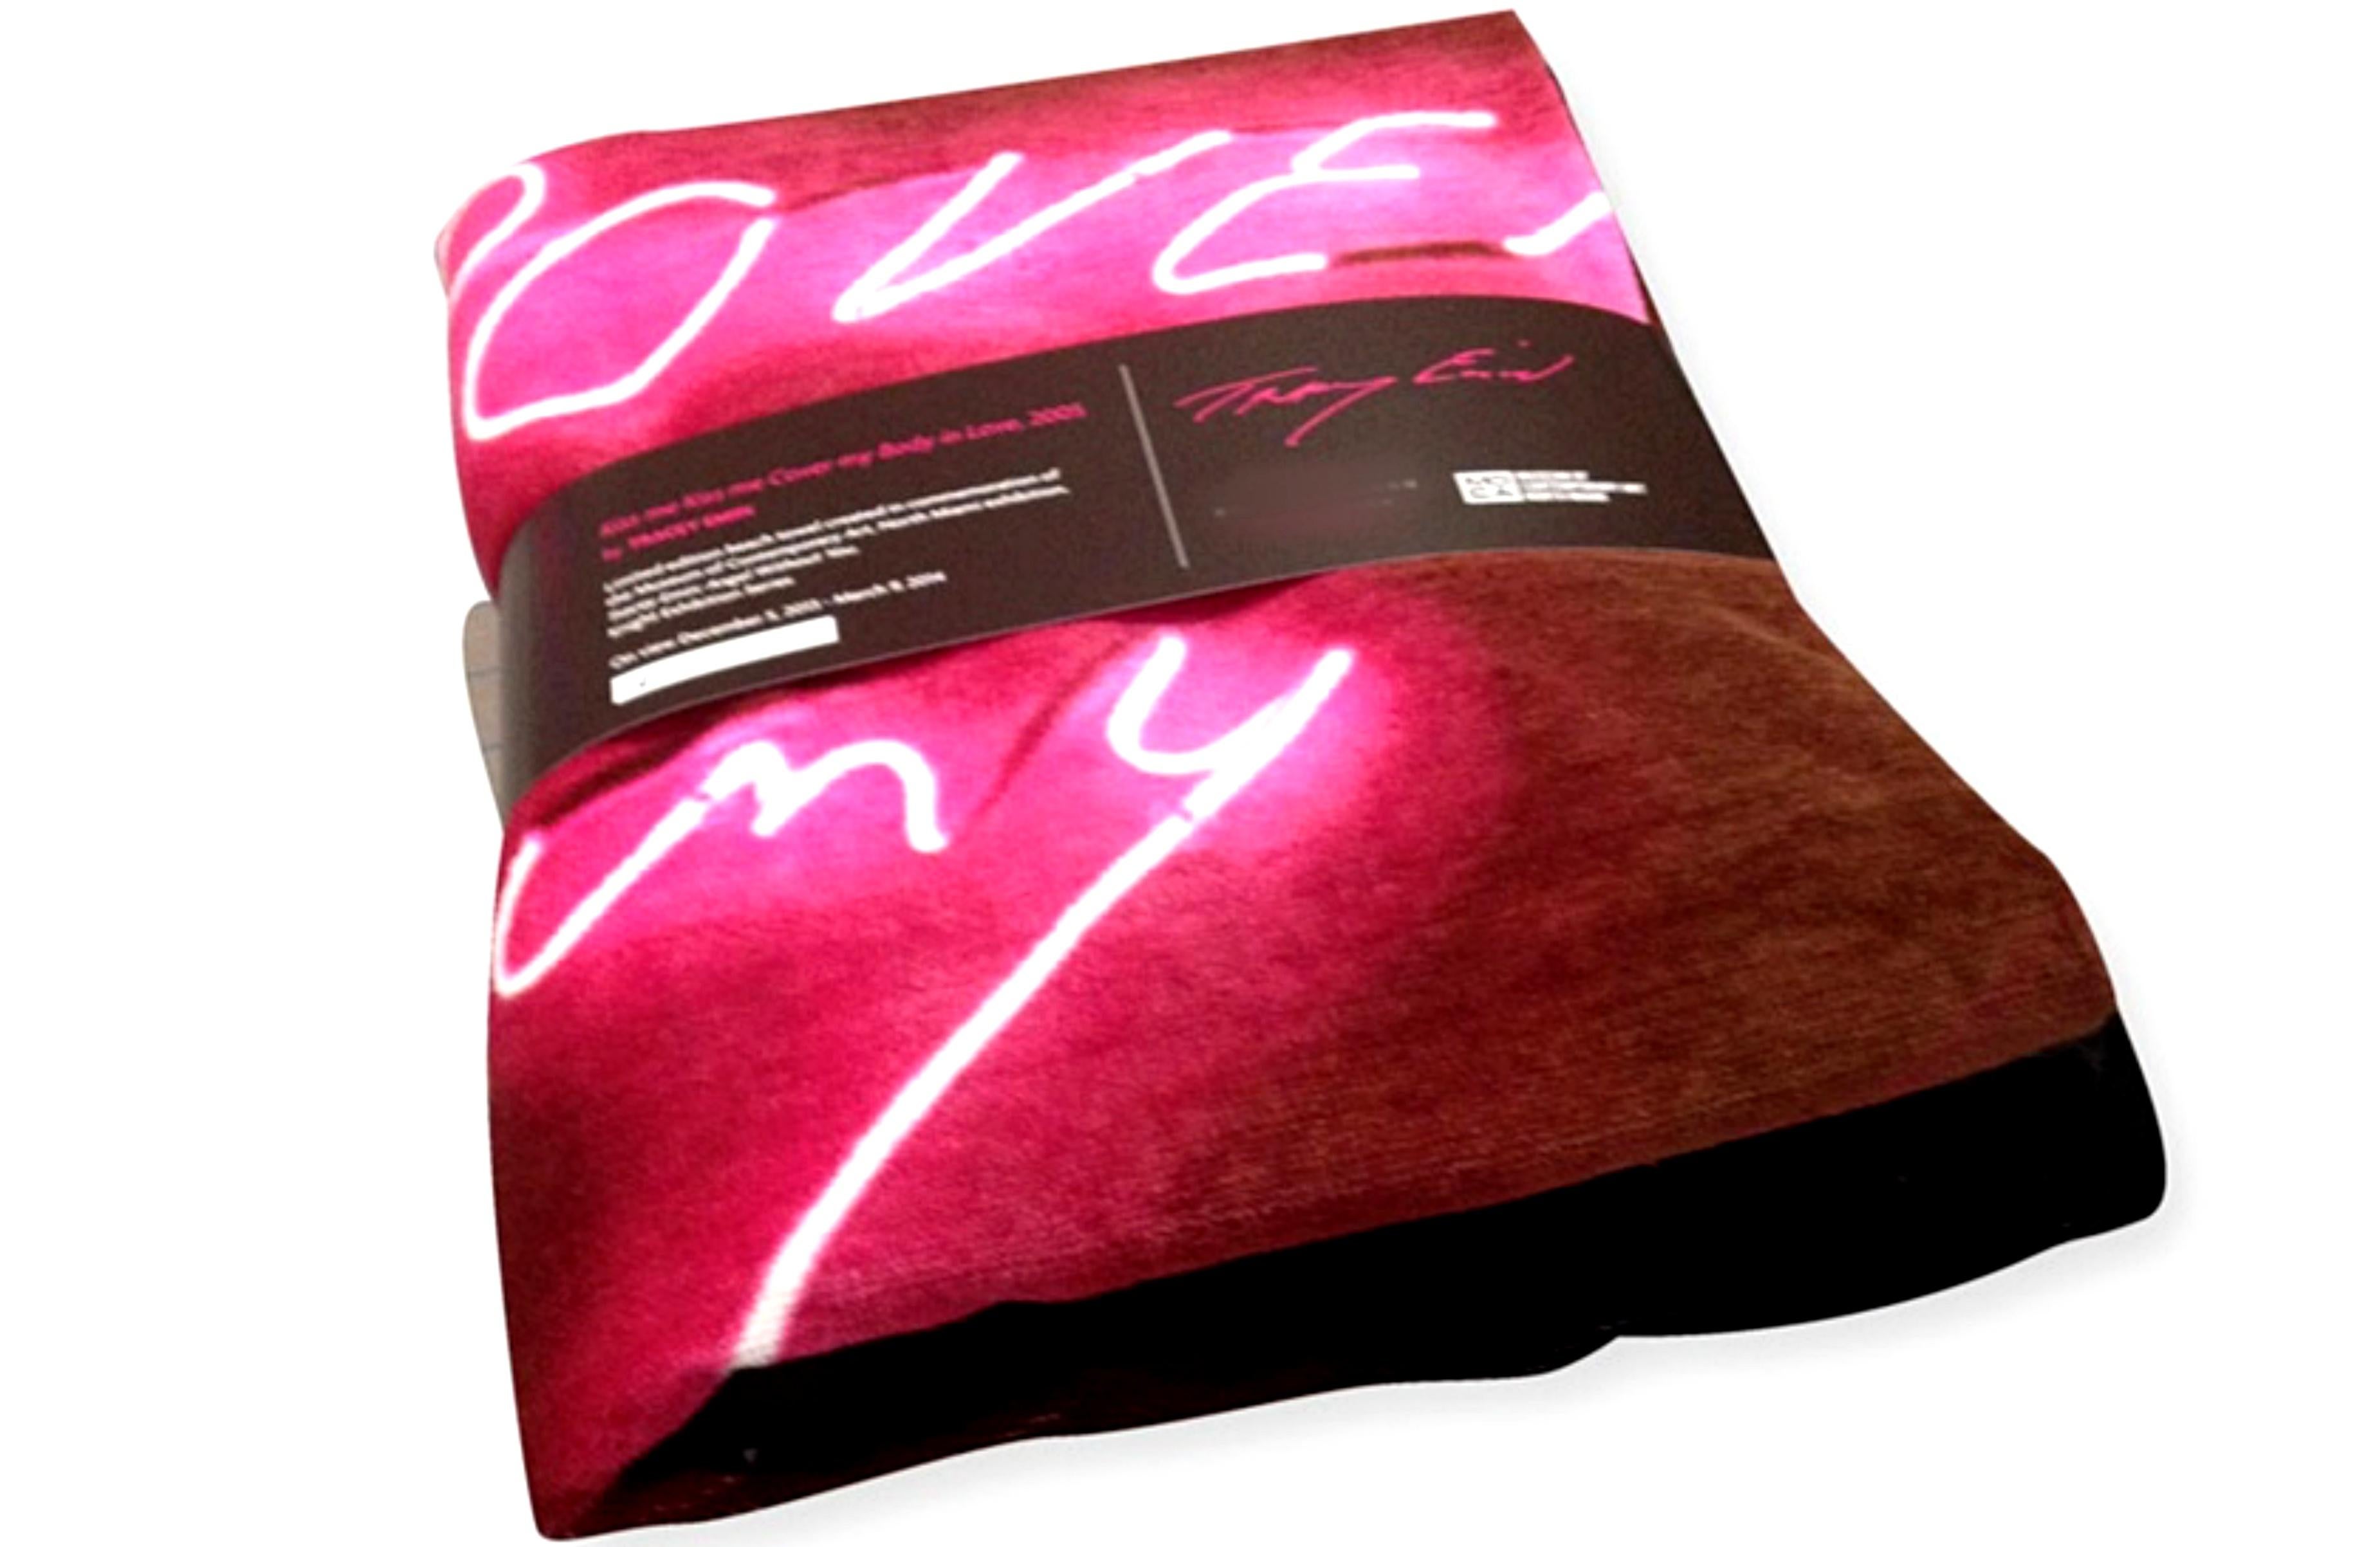 Kiss Me, Kiss Me, Towel (édition limitée, numérotée à la main et enveloppée dans un COA officiel) - Pop Art Mixed Media Art par Tracey Emin